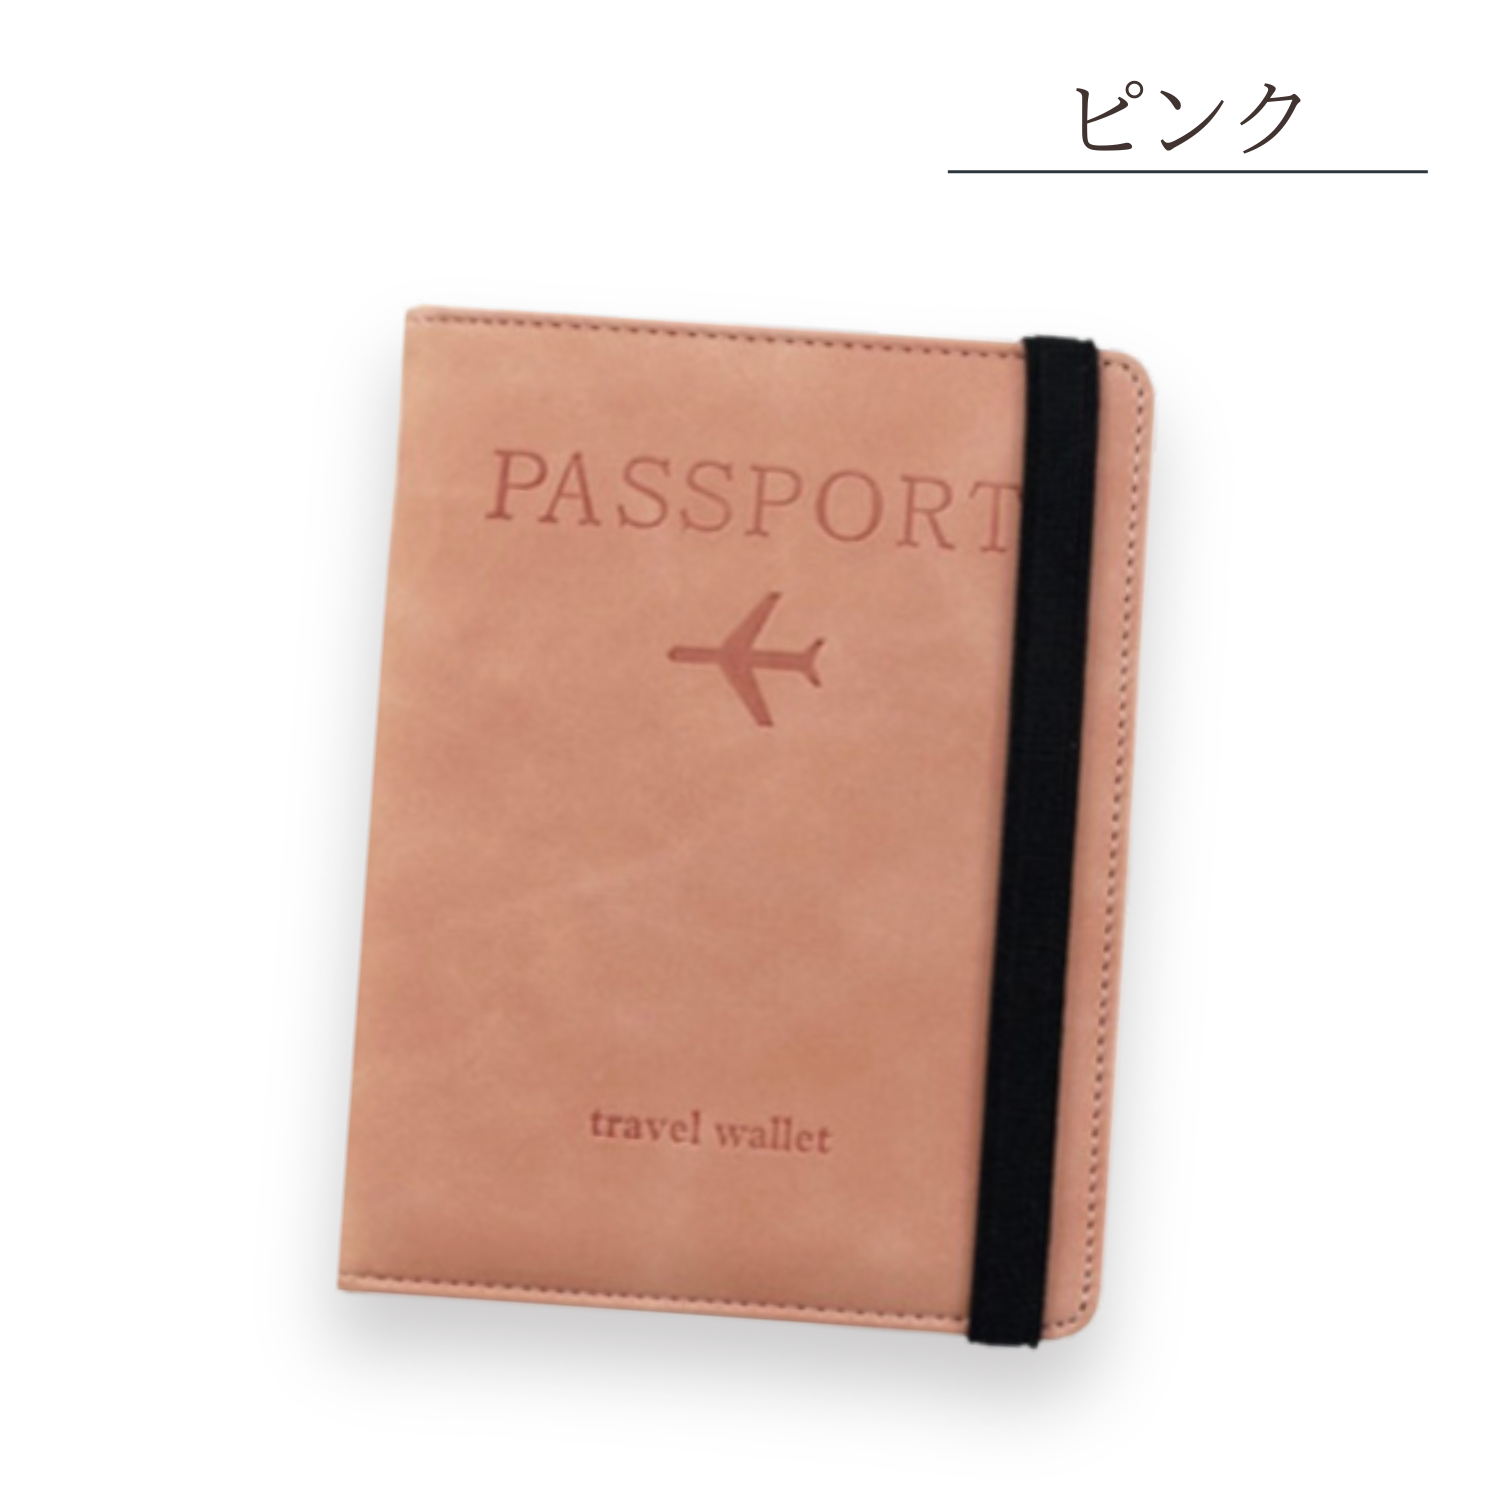 パスポートケース 韓国 スキミング防止 パスポートカバー パスポート入れ 貴重品 旅行 防水 航空券...